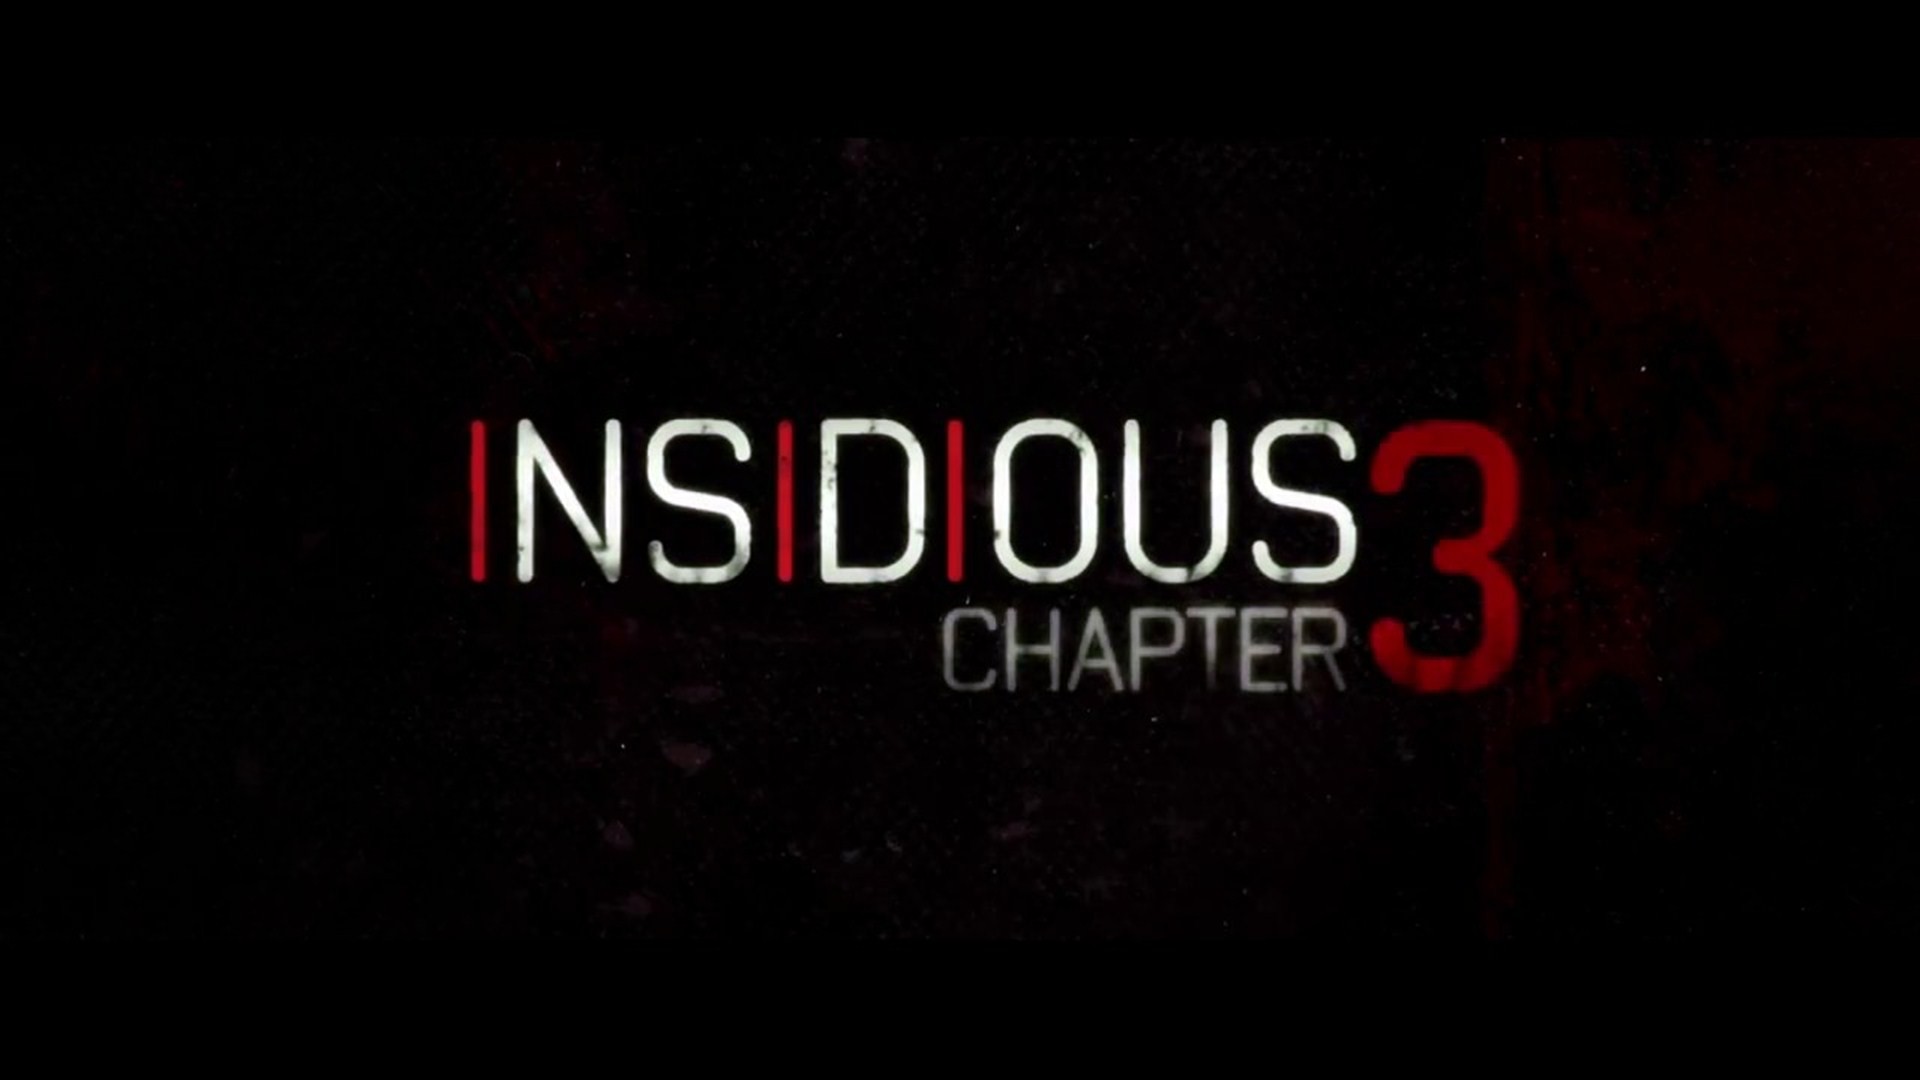 insidious 3 full movie free